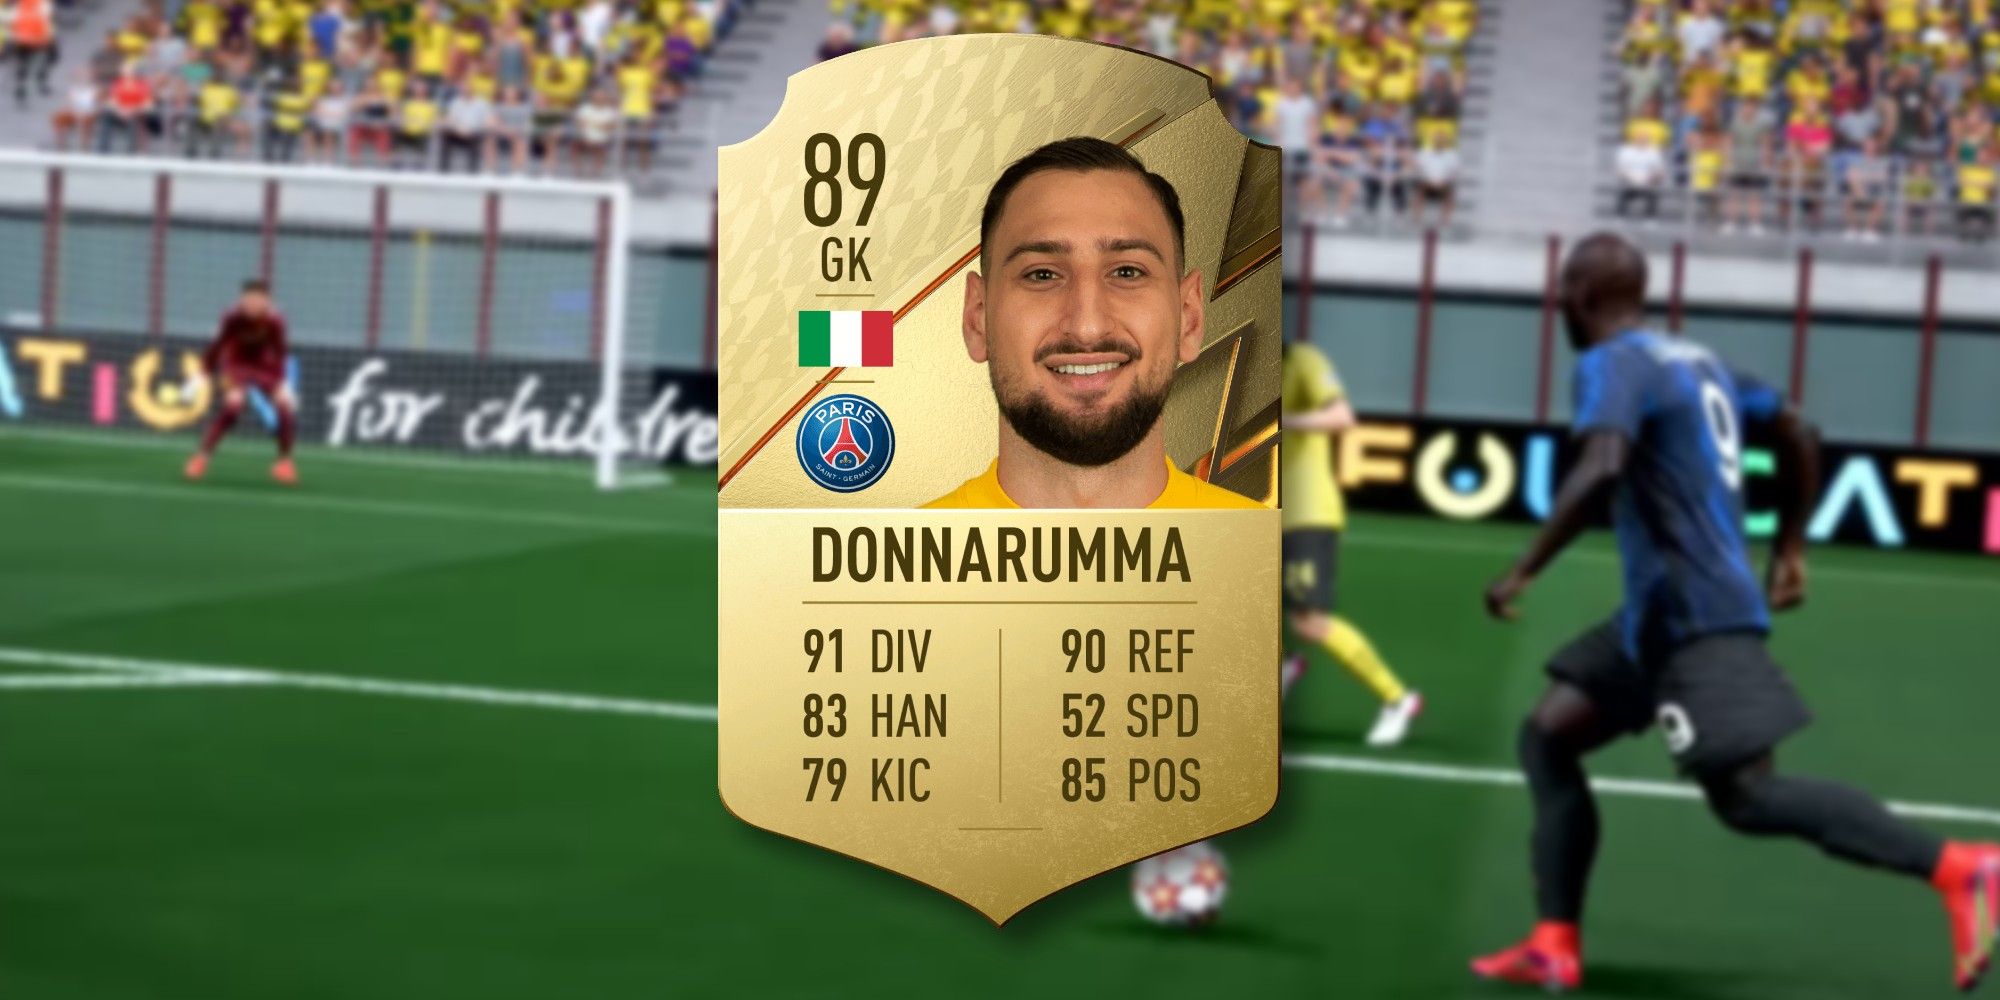 FIFA 22 donnarumma card